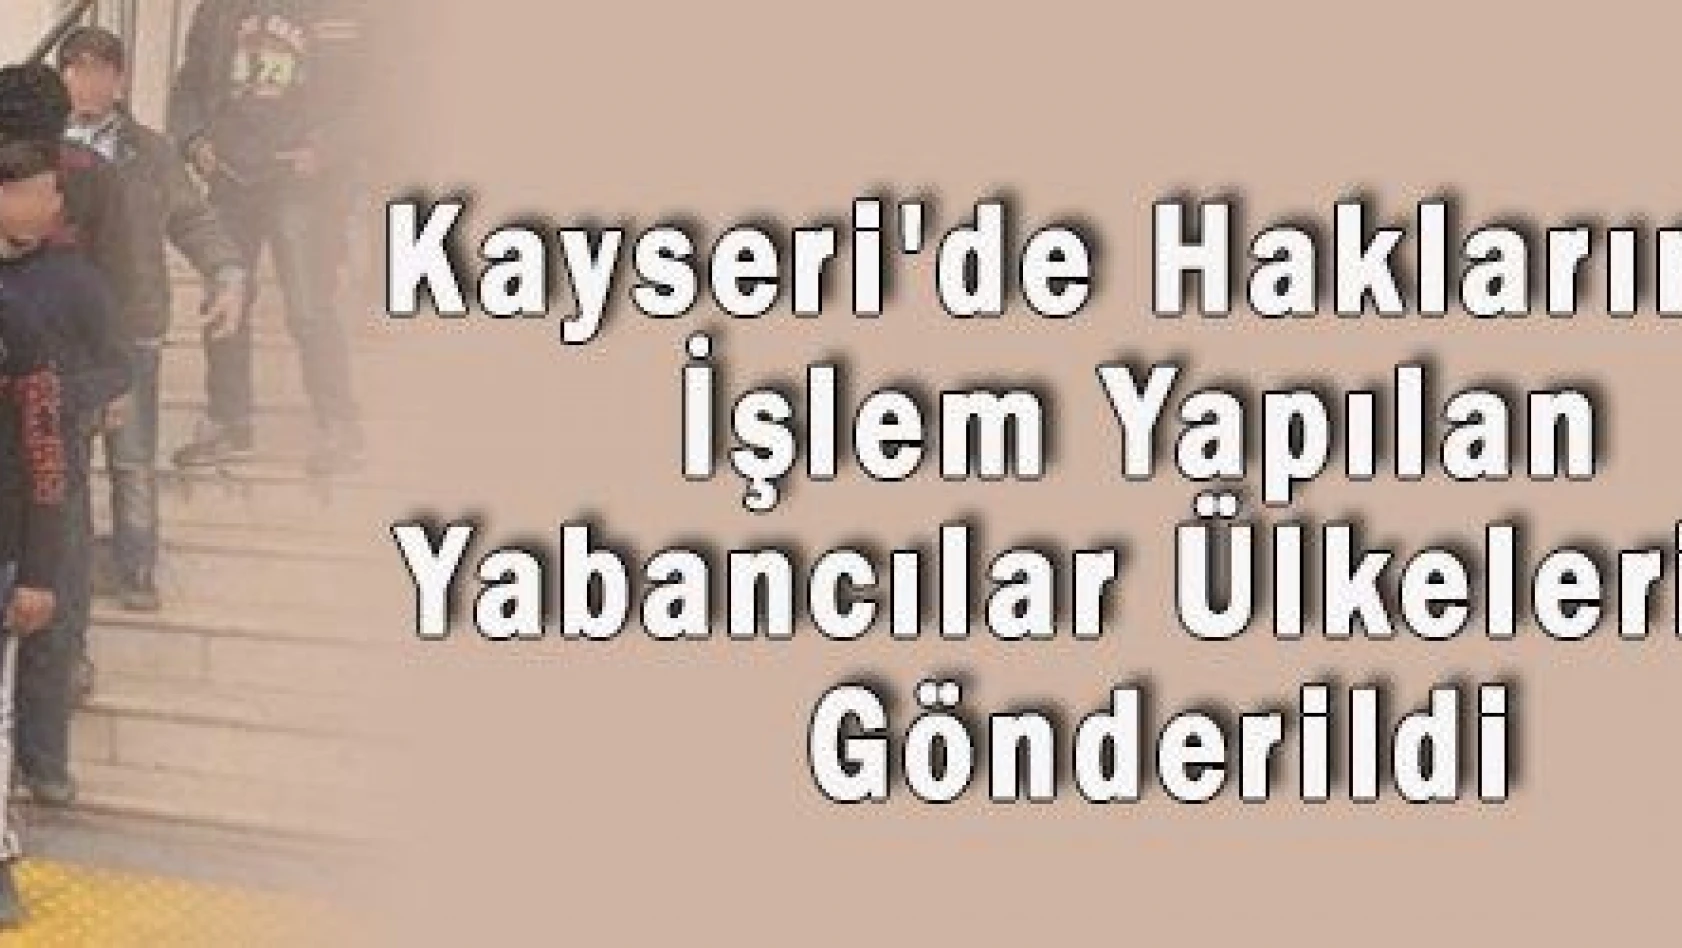 Kayseri'de Haklarında İşlem Yapılan Yabancılar Ülkelerine Gönderildi